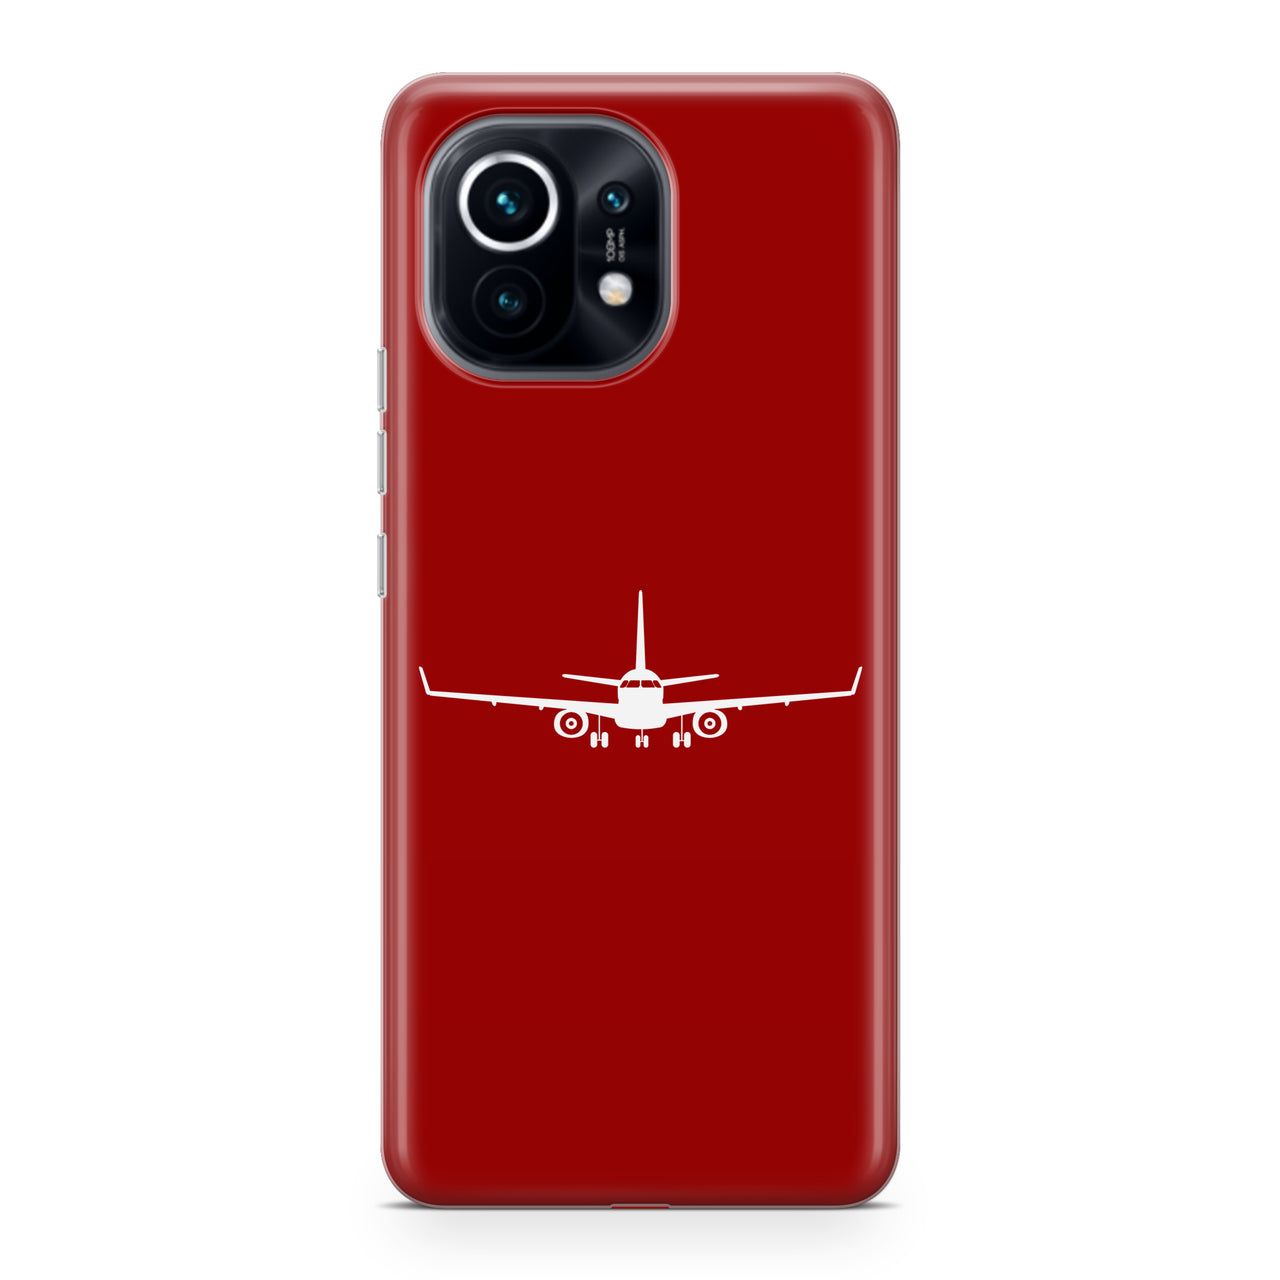 Embraer E-190 Silhouette Plane Designed Xiaomi Cases